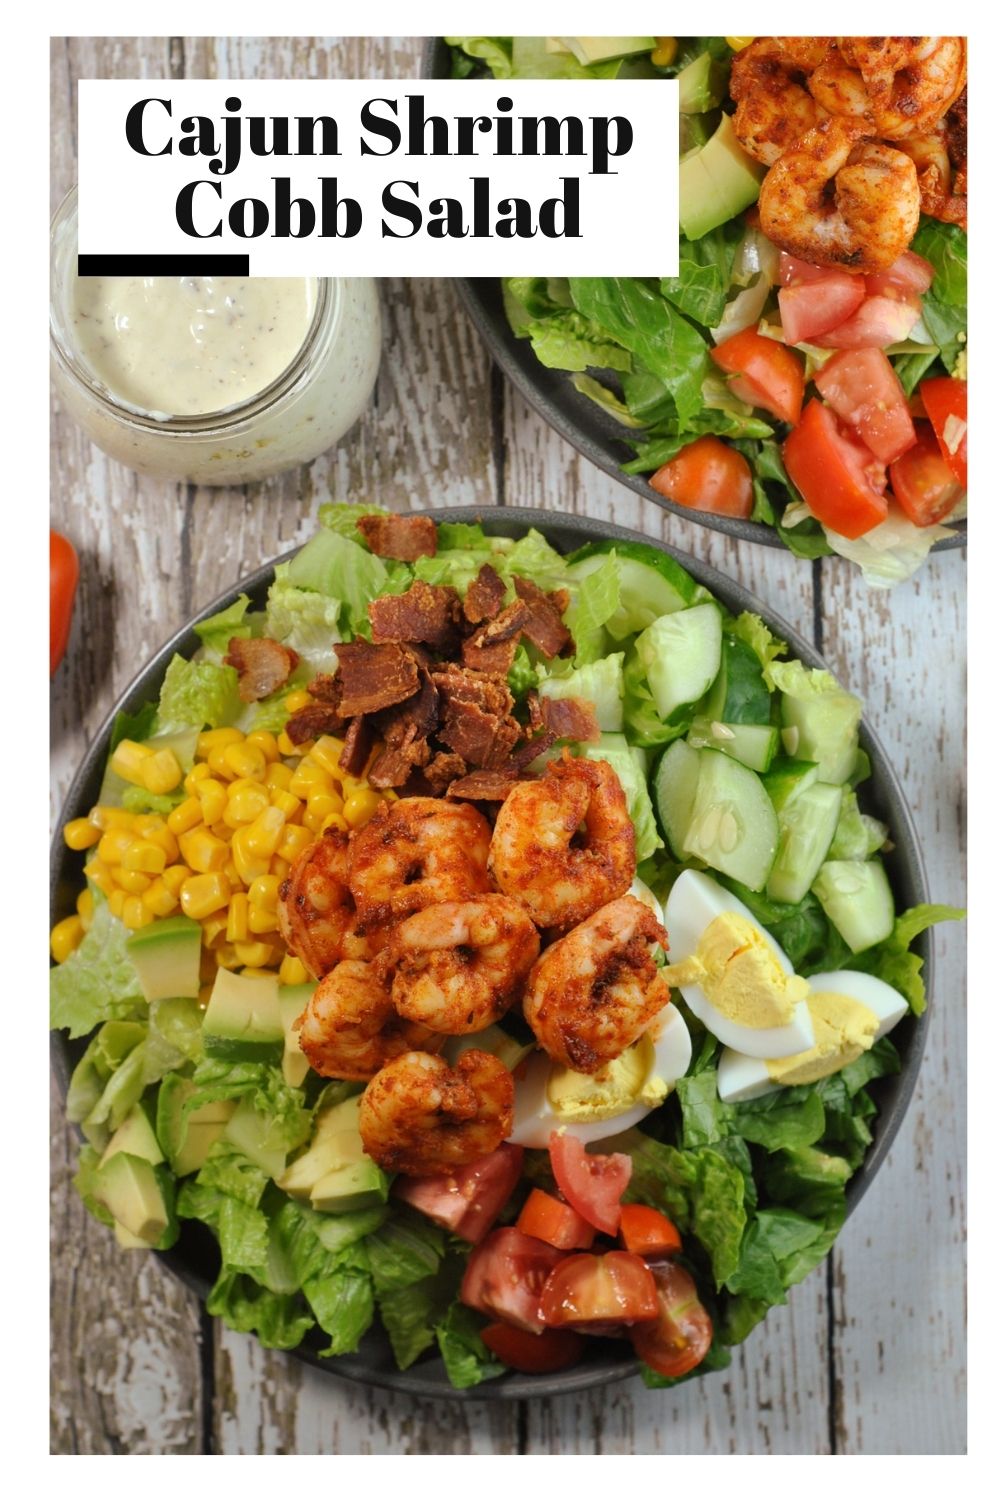 Cajun Shrimp Cobb Salad via @preventionrd